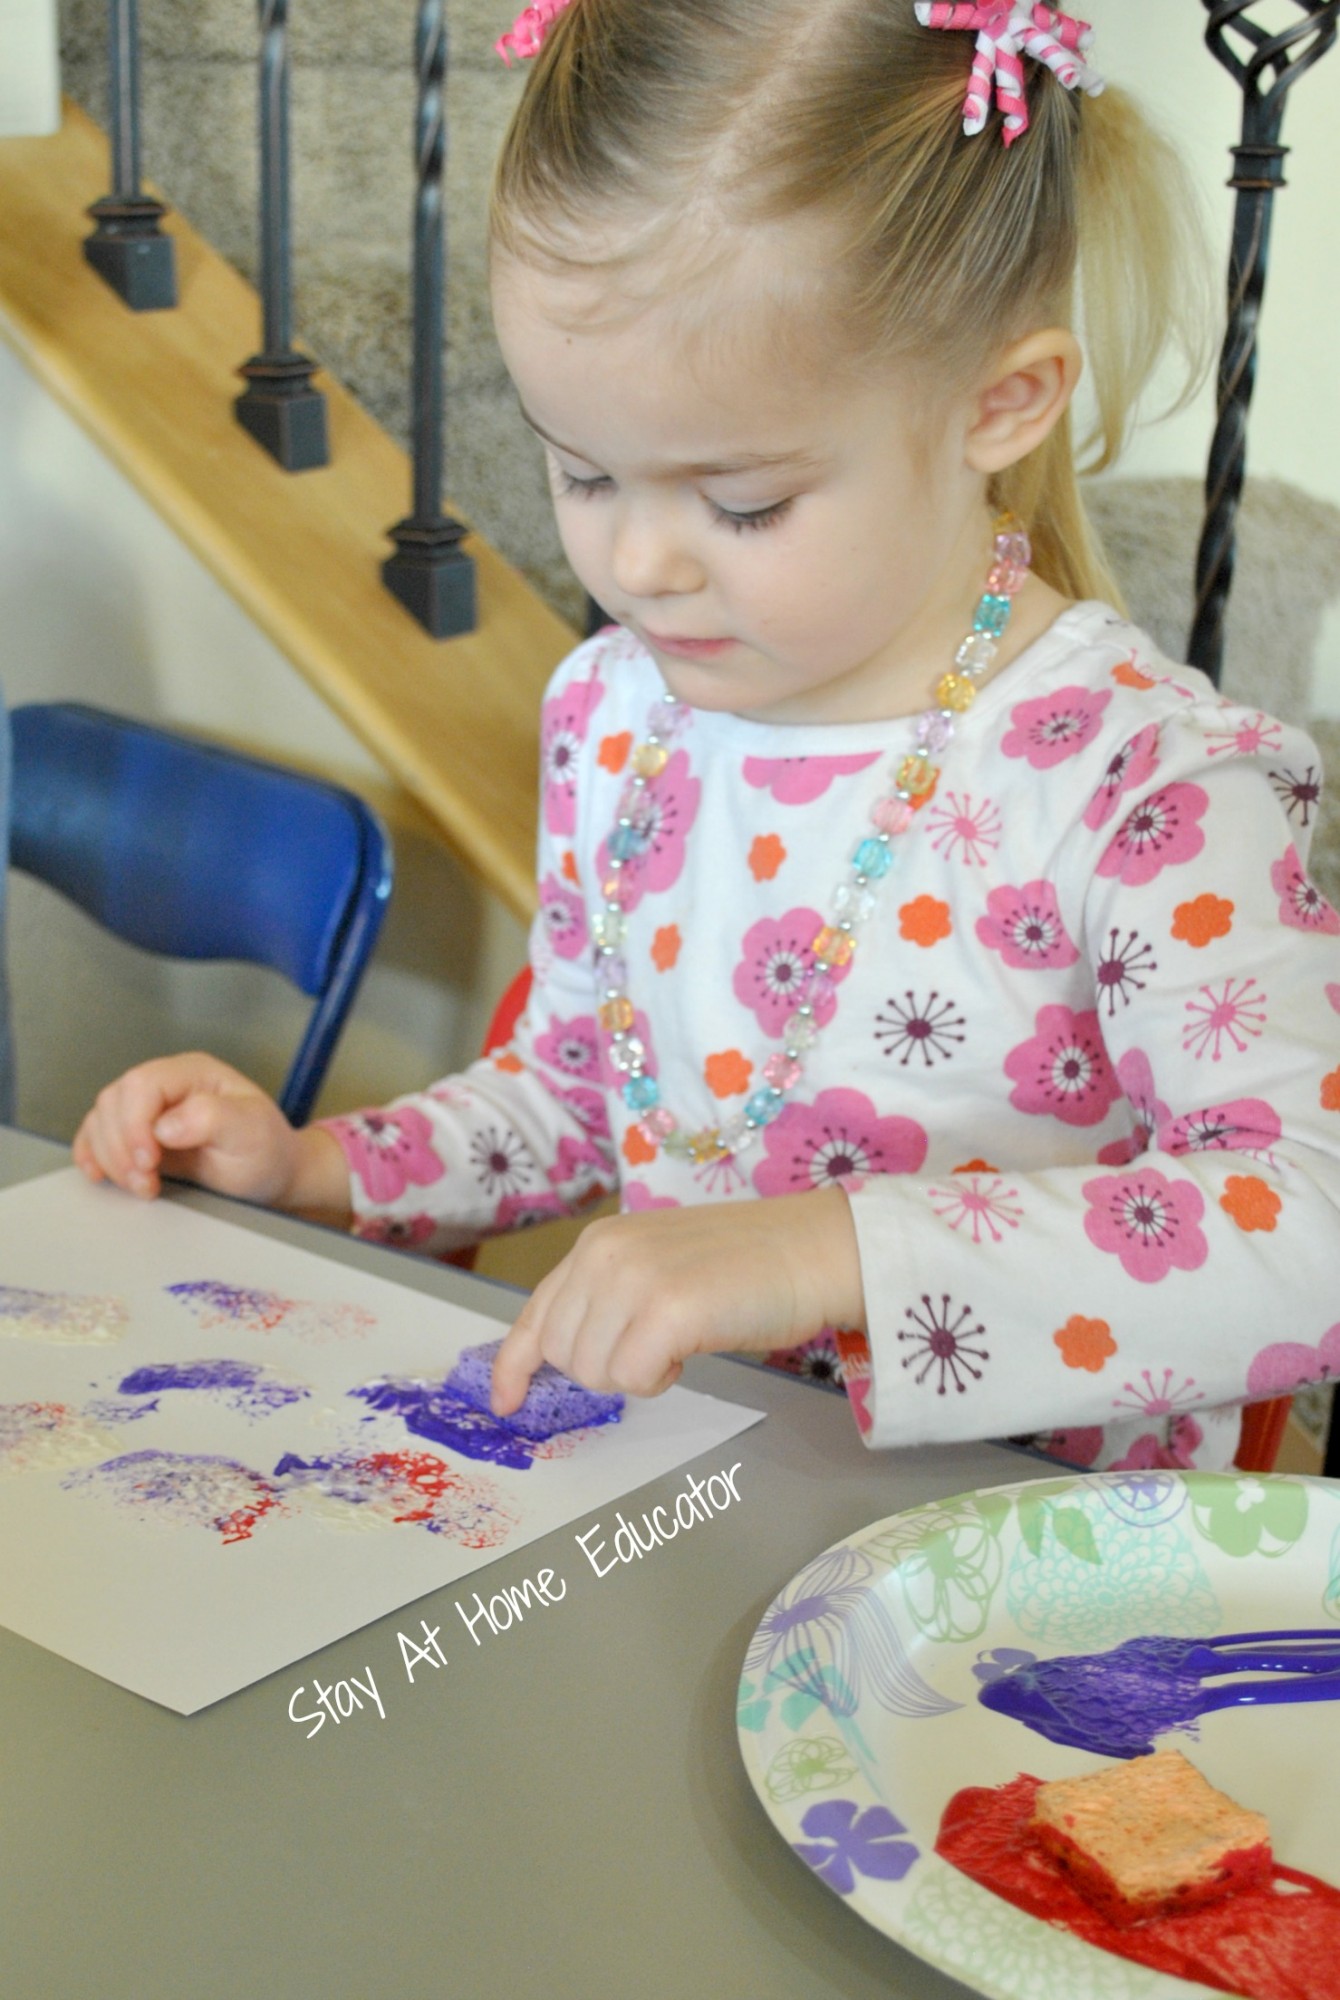 sponge painting in preschool - Stay At Home Educator